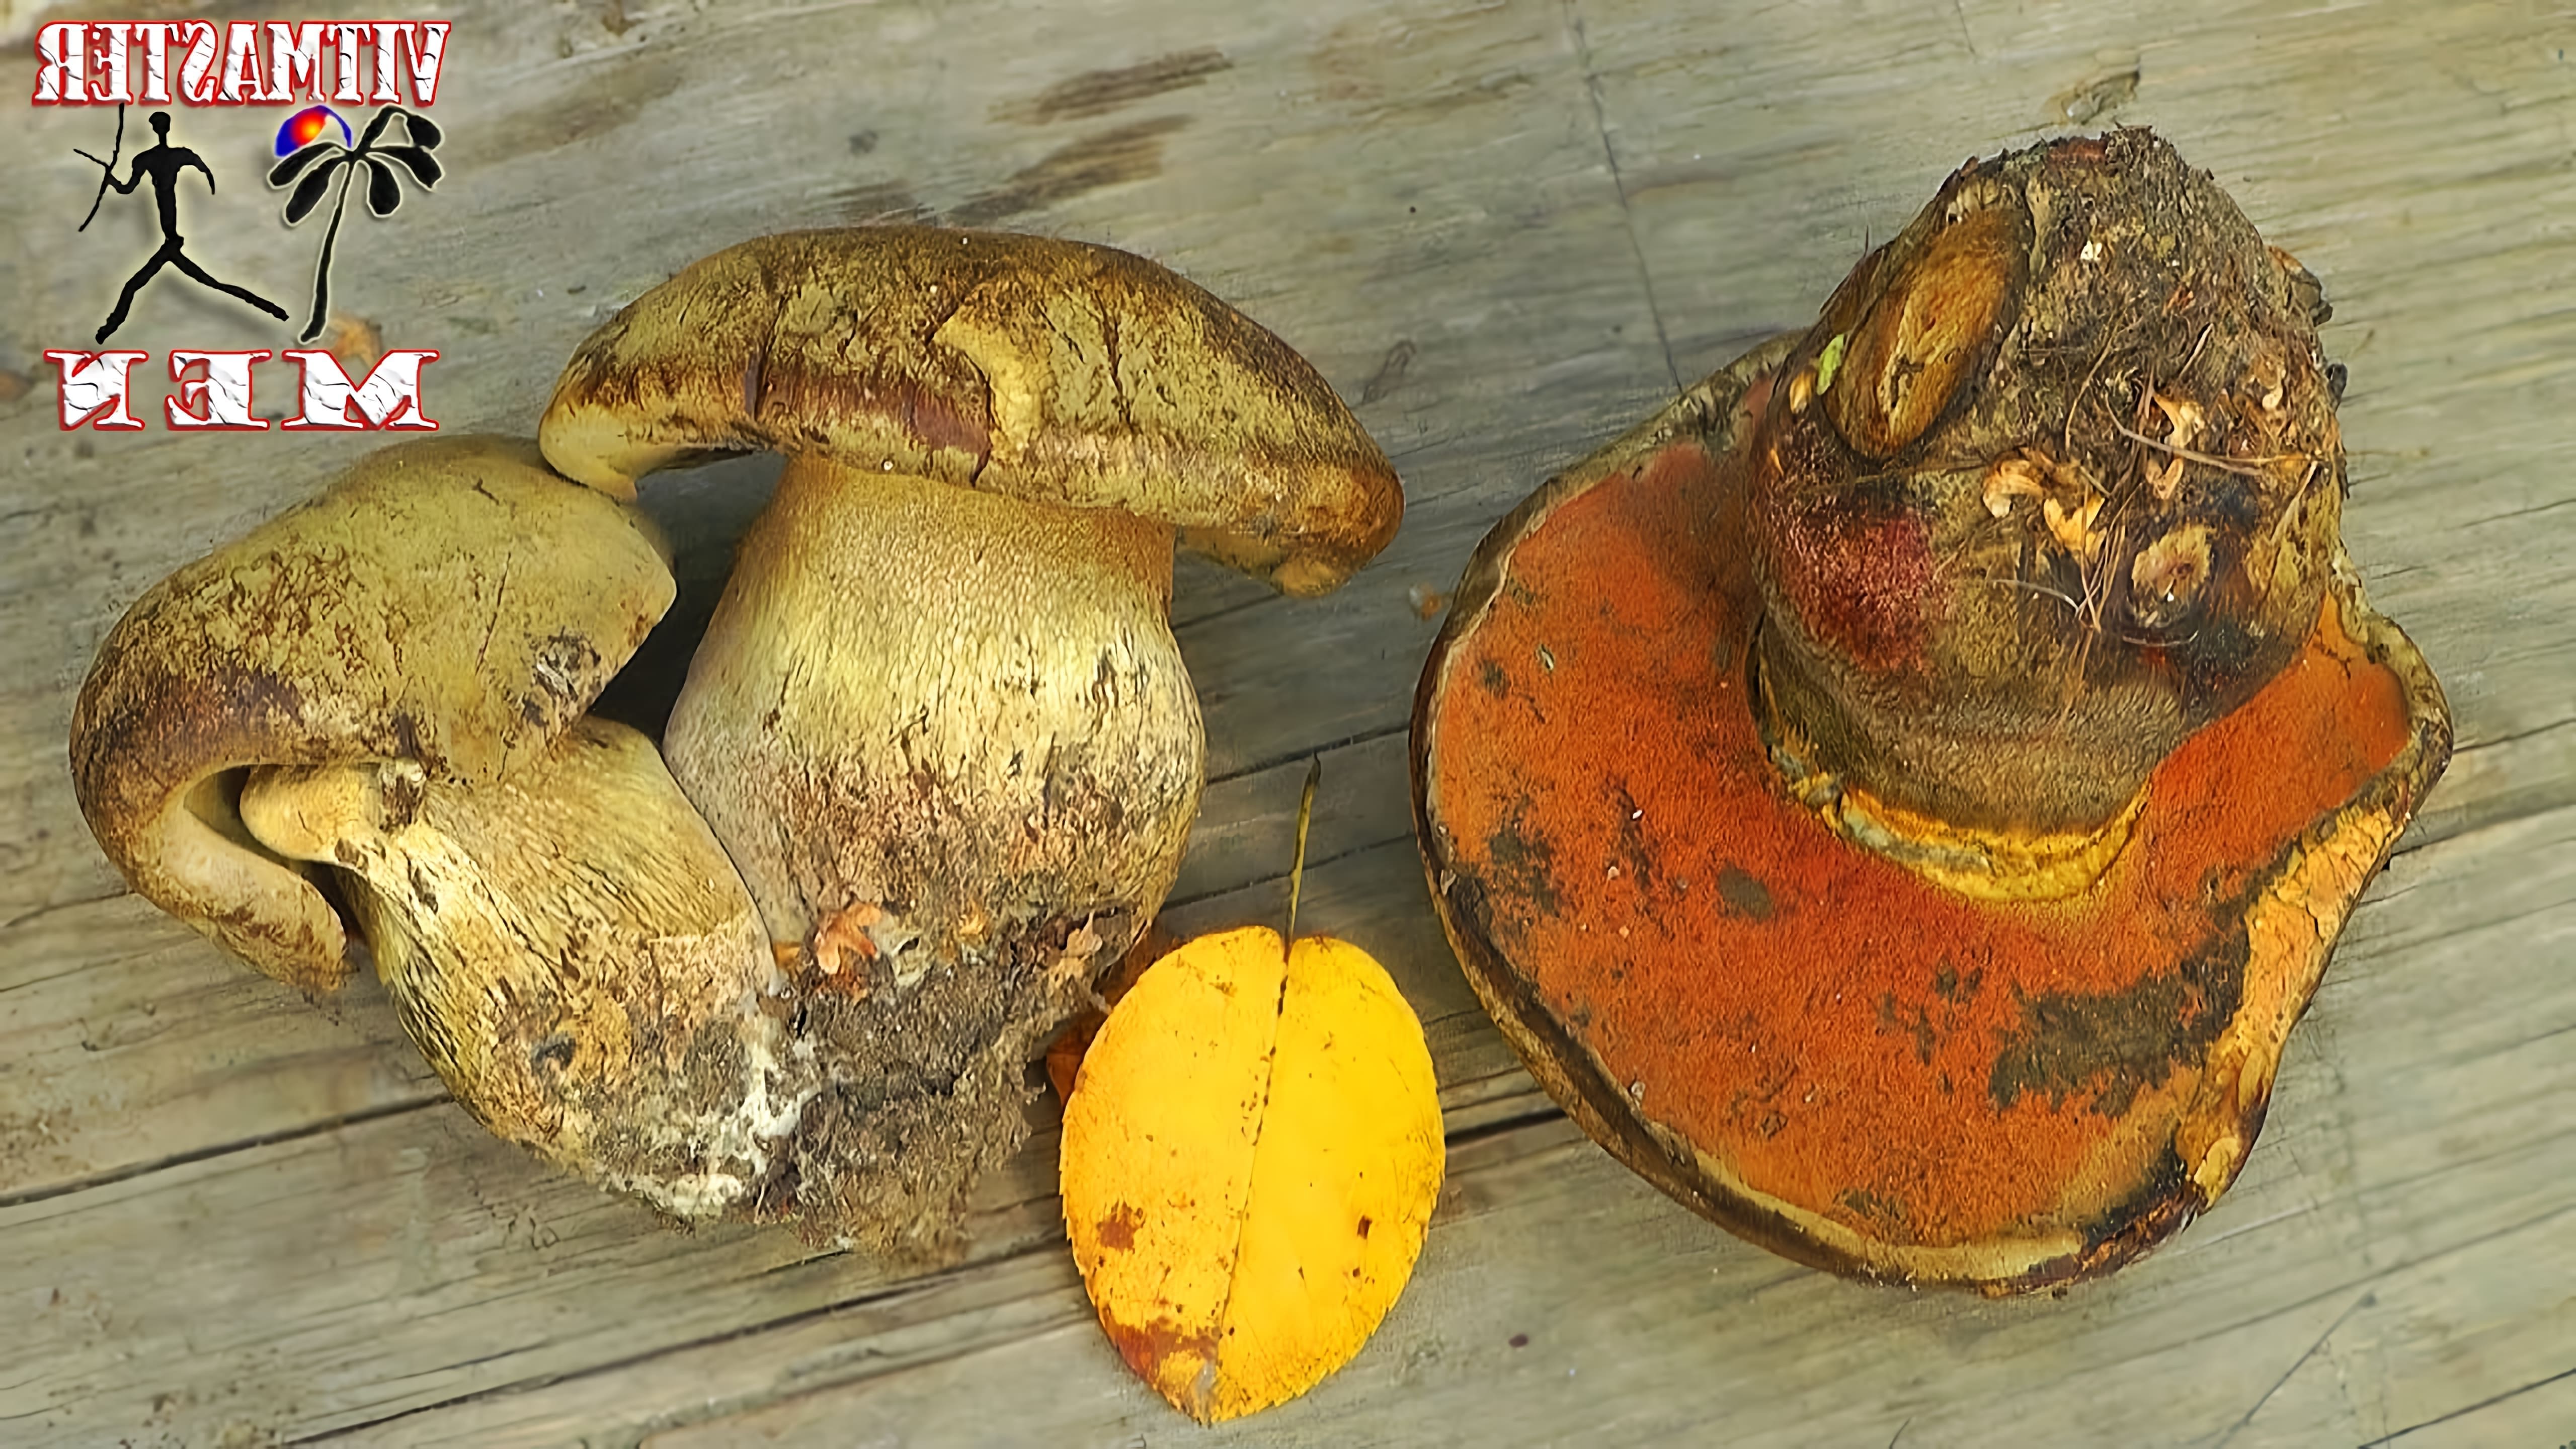 Сатанинский гриб - это название одного из видов грибов, который может быть опасным для здоровья человека